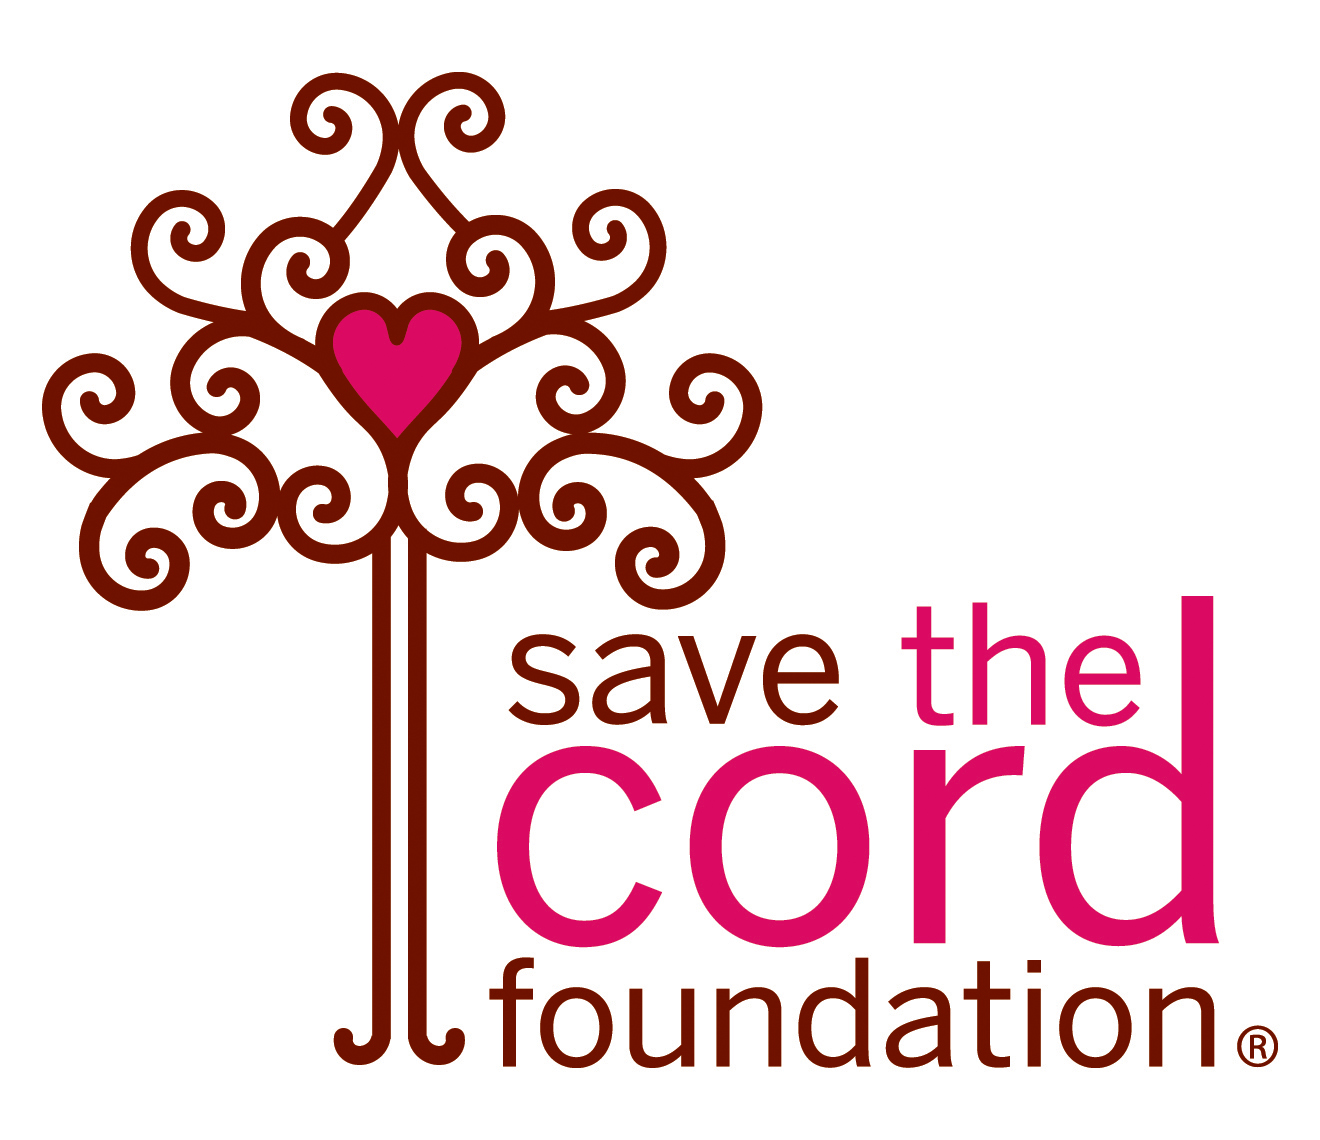 Save the Cord Foundation (501c3 non-profit)